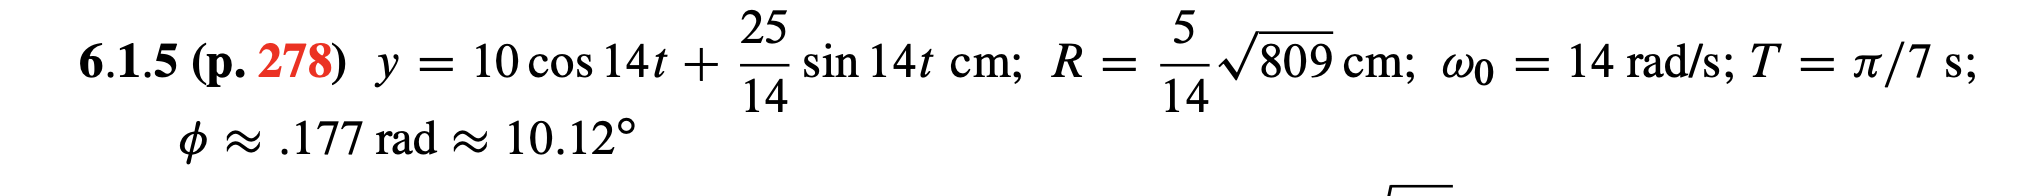 25
sin 14t cm; R =
14
5
V809 cm; wo = 14 rad/s; T = n/7 s;
14
6.1.5 (p. 278) y = 10 cos 14t +
O 2 .177 rad - 10.12°
